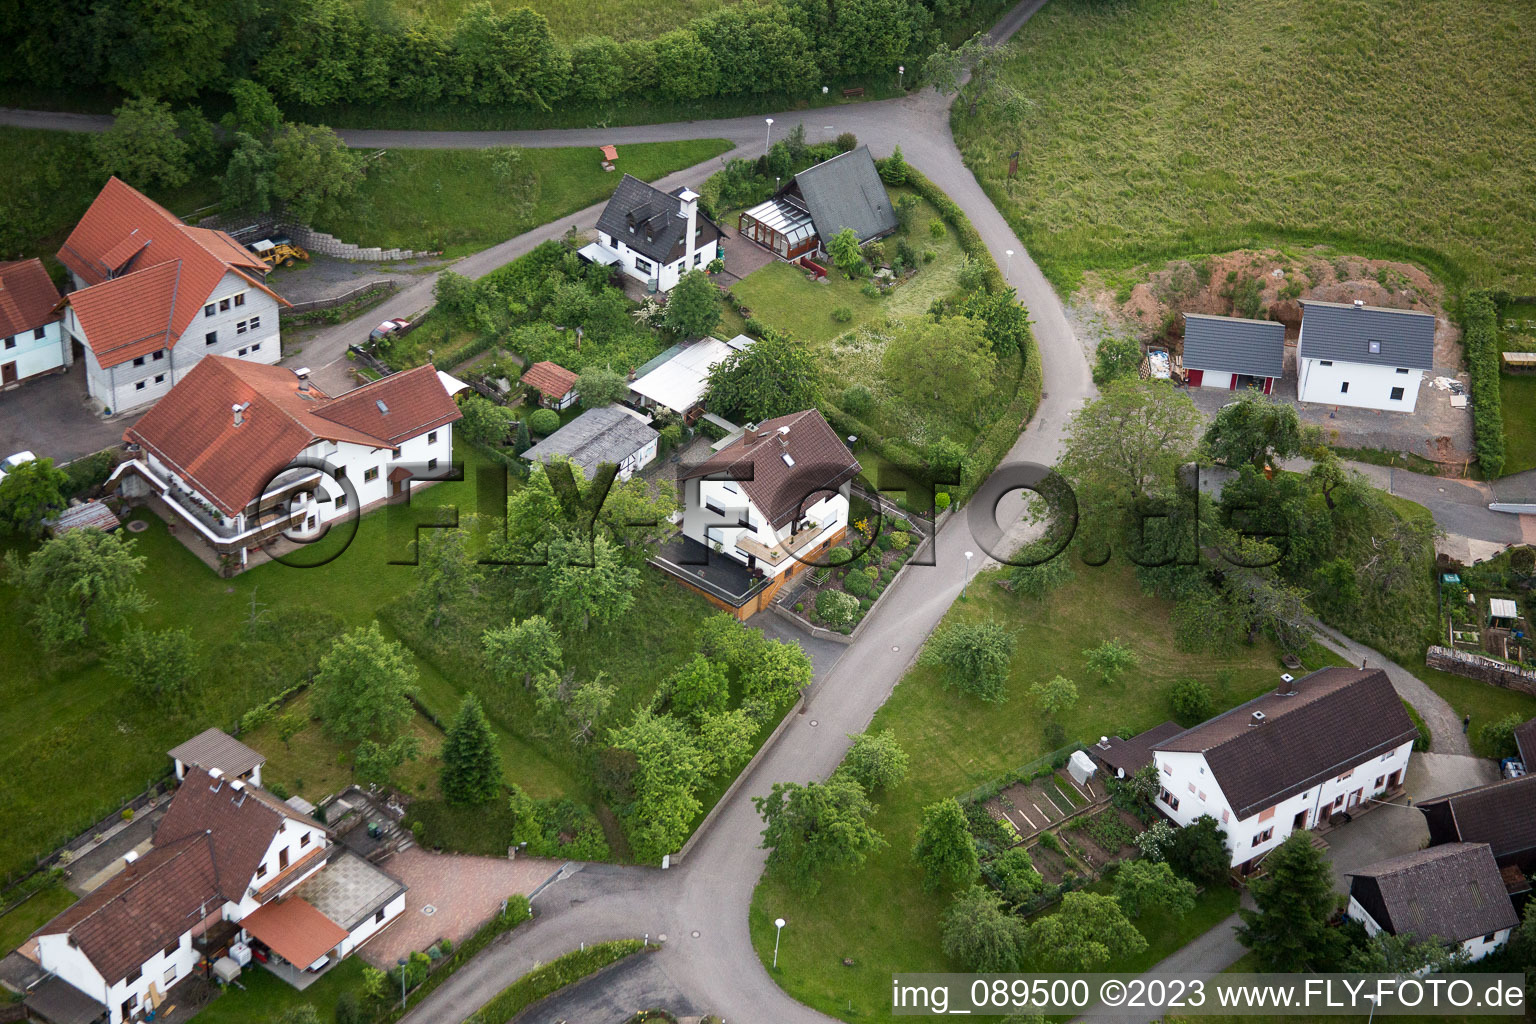 Brombach im Bundesland Baden-Württemberg, Deutschland von einer Drohne aus